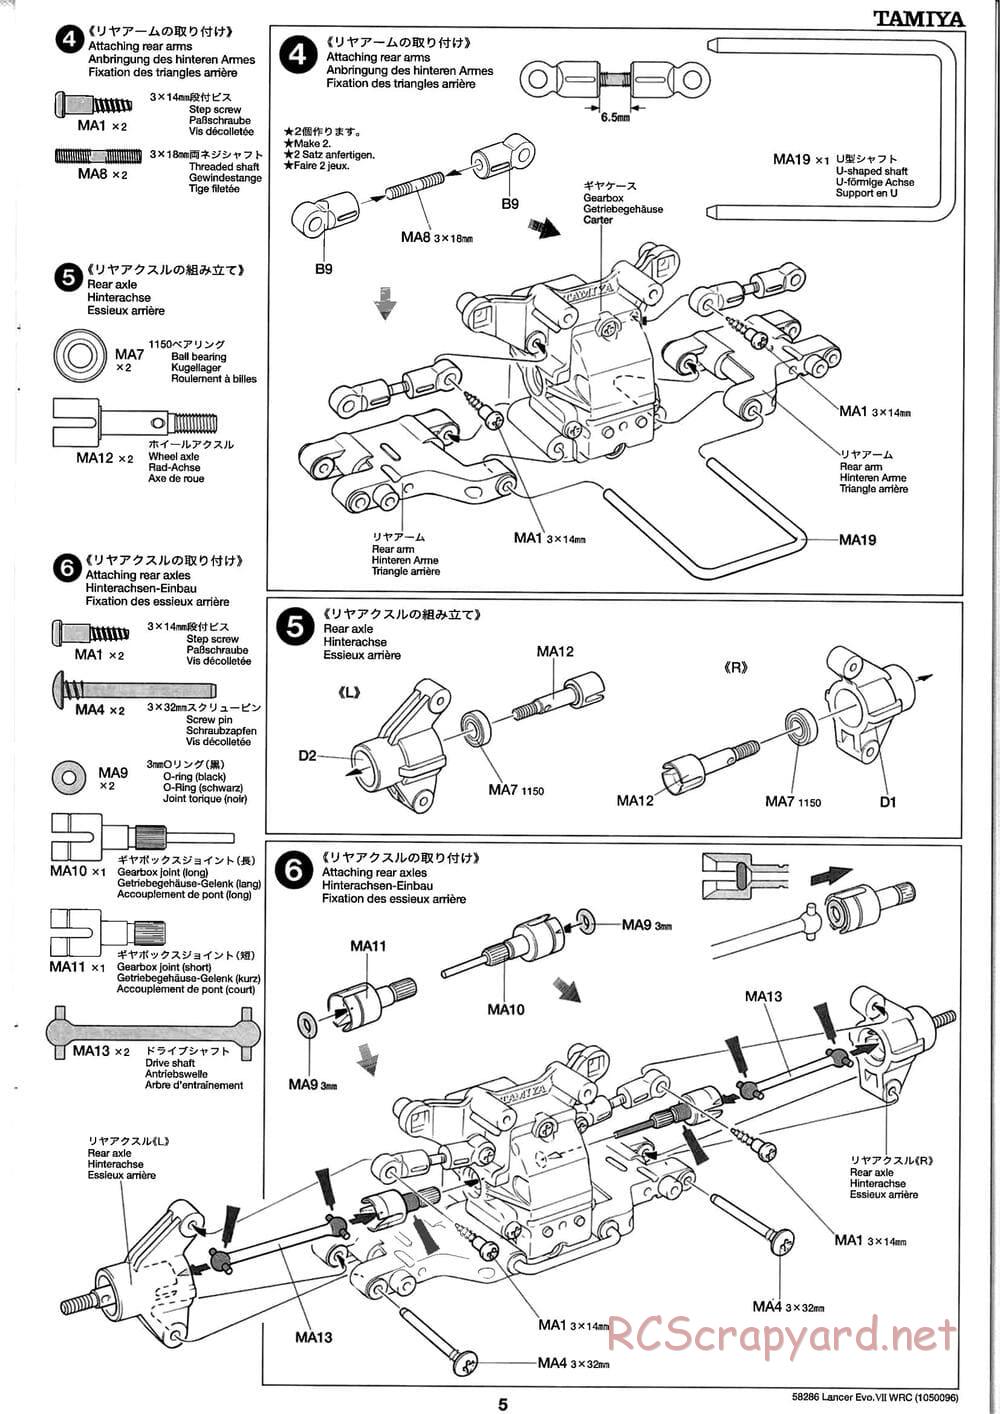 Tamiya - Mitsubishi Lancer Evolution VII WRC - TB-01 Chassis - Manual - Page 5